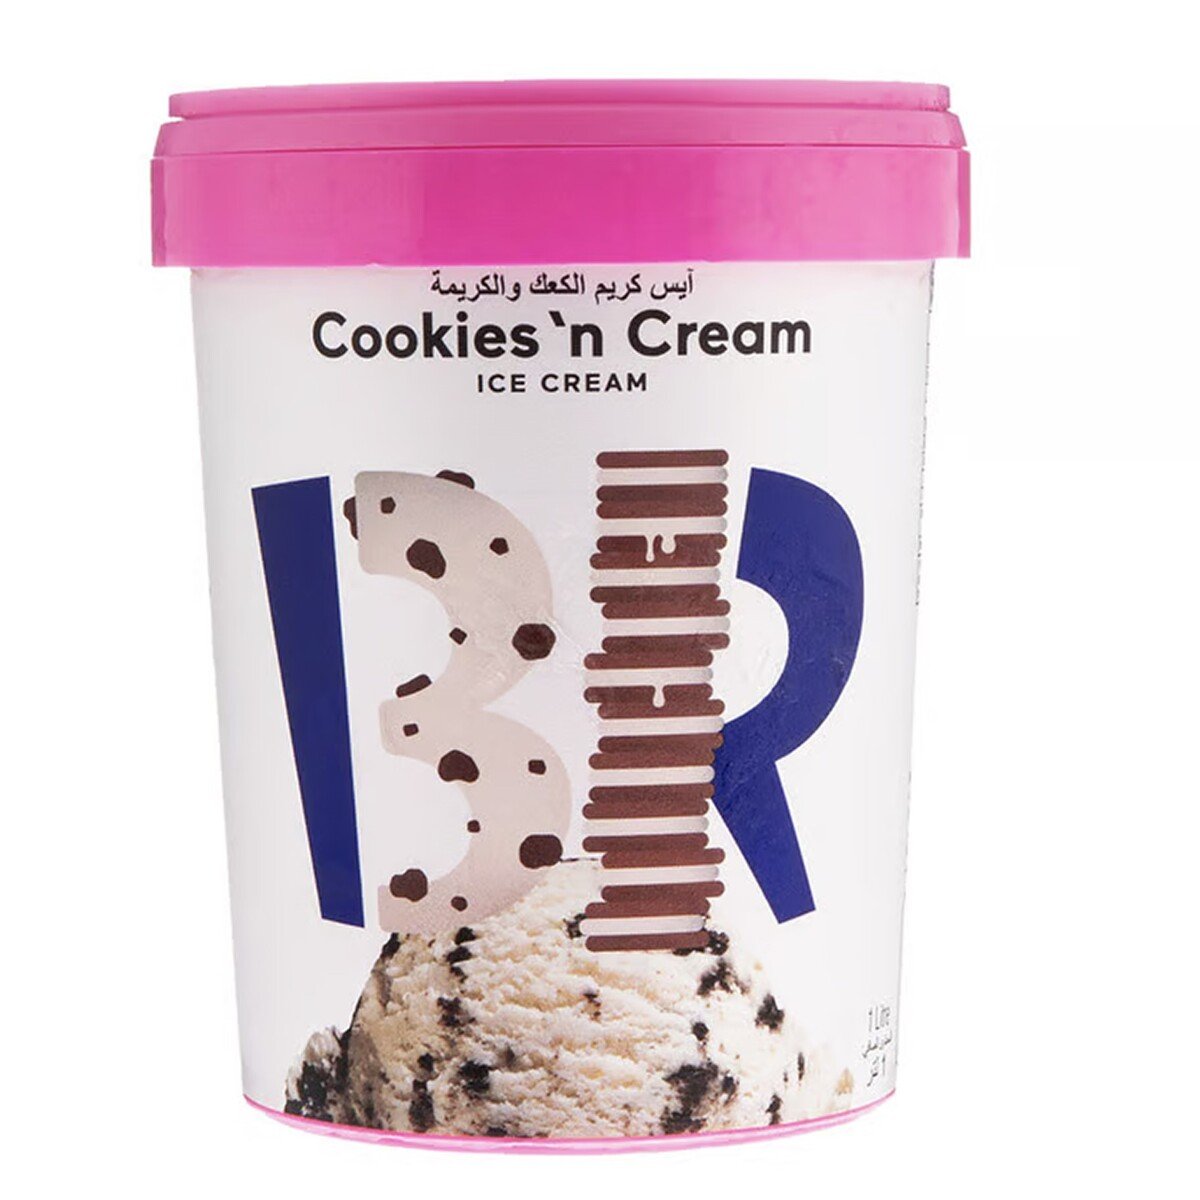 اشتري قم بشراء باسكن روبنز آيس كريم كوكيز وكريمة 1 لتر Online at Best Price من الموقع - من لولو هايبر ماركت Ice Cream Take Home في الامارات